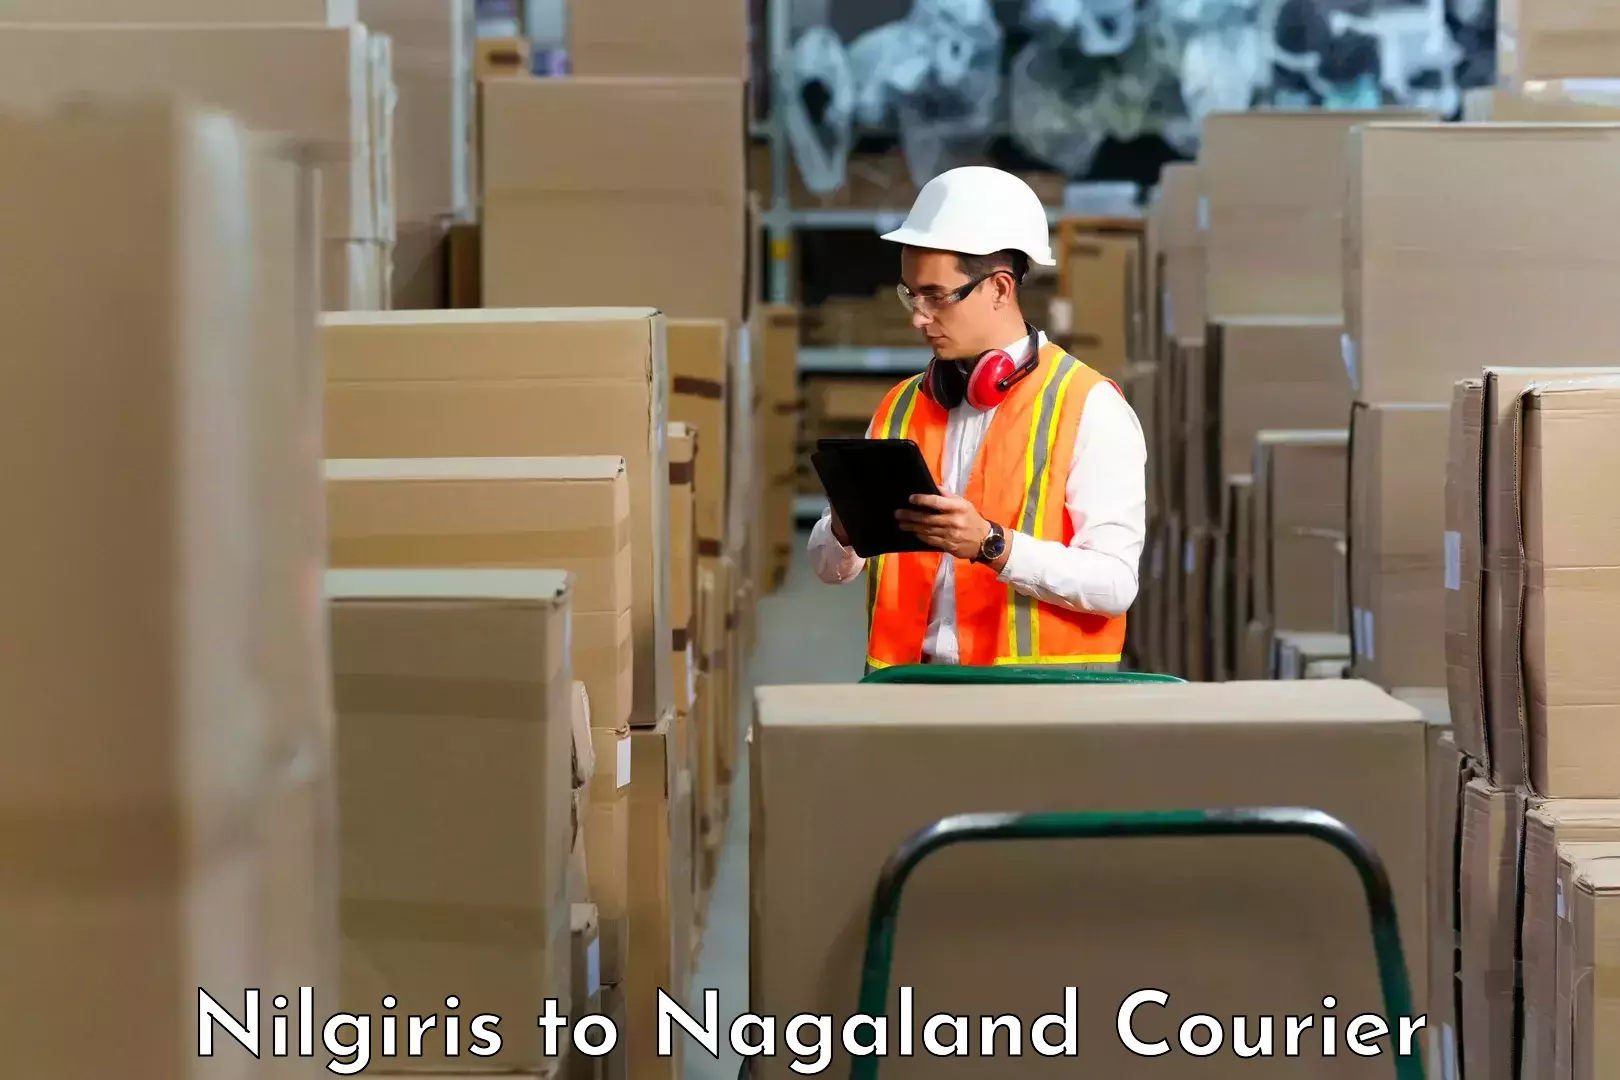 Cargo courier service Nilgiris to Dimapur